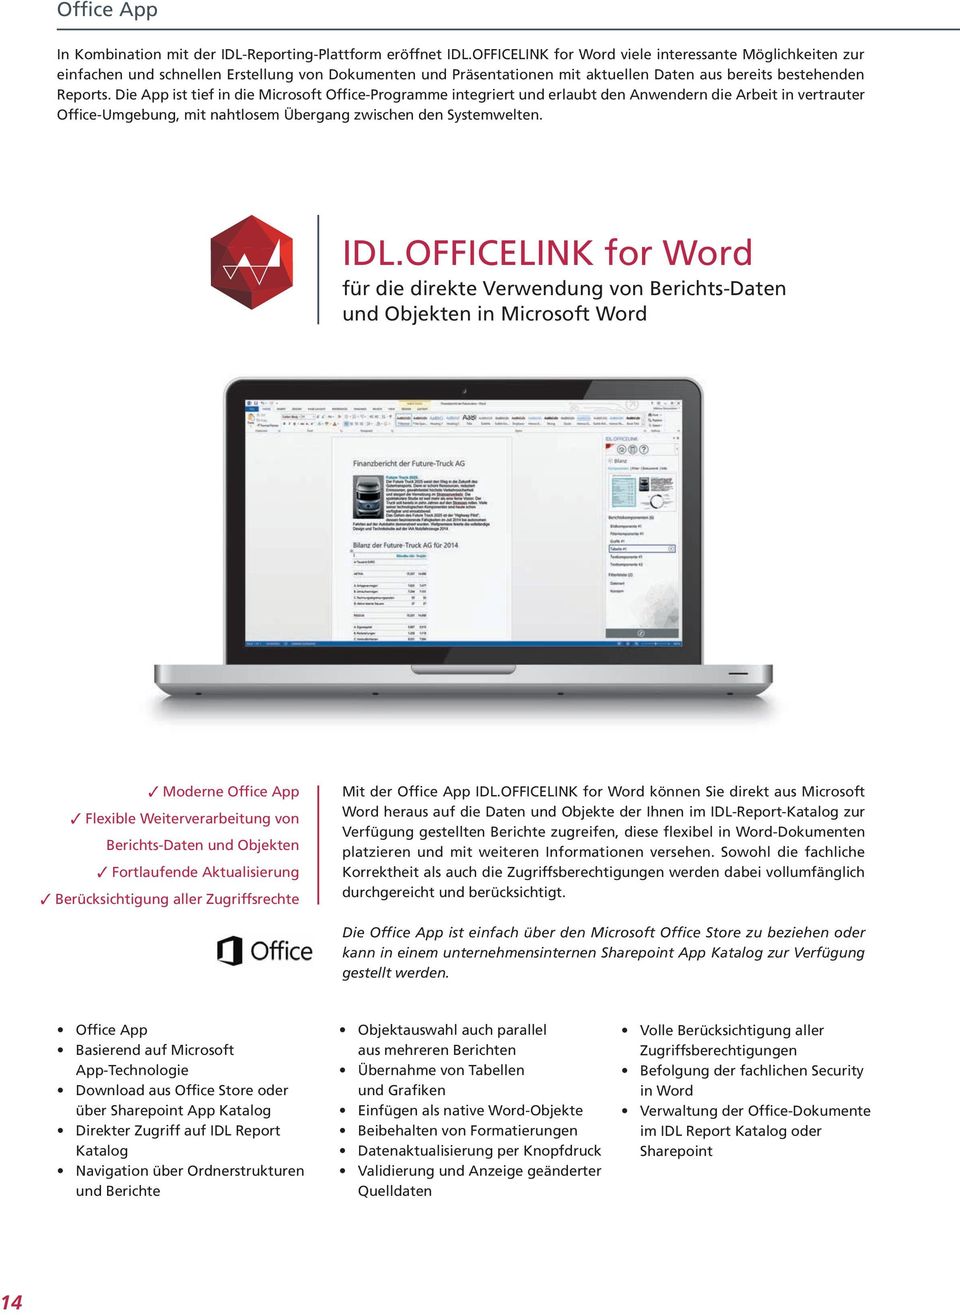 Die App ist tief in die Microsoft Office-Programme integriert und erlaubt den Anwendern die Arbeit in vertrauter Office-Umgebung, mit nahtlosem Übergang zwischen den Systemwelten. IDL.